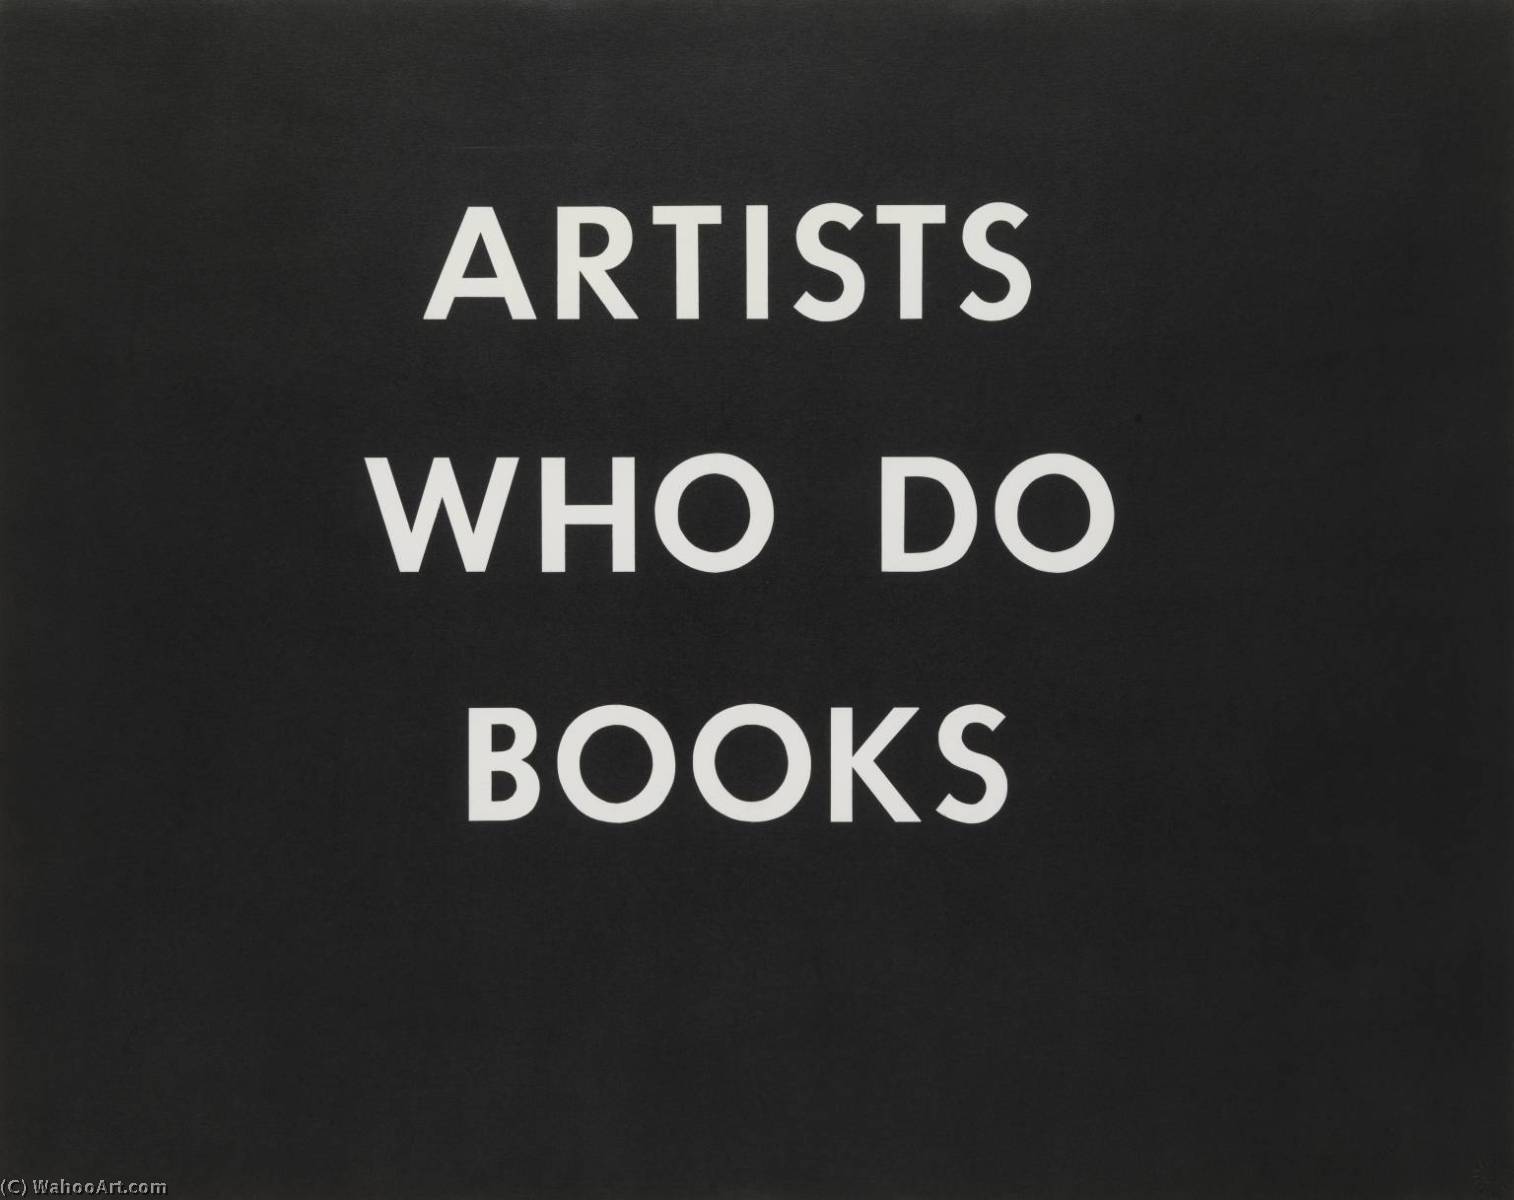 WikiOO.org - Encyclopedia of Fine Arts - Maľba, Artwork Edward Ruscha - Artists who do books